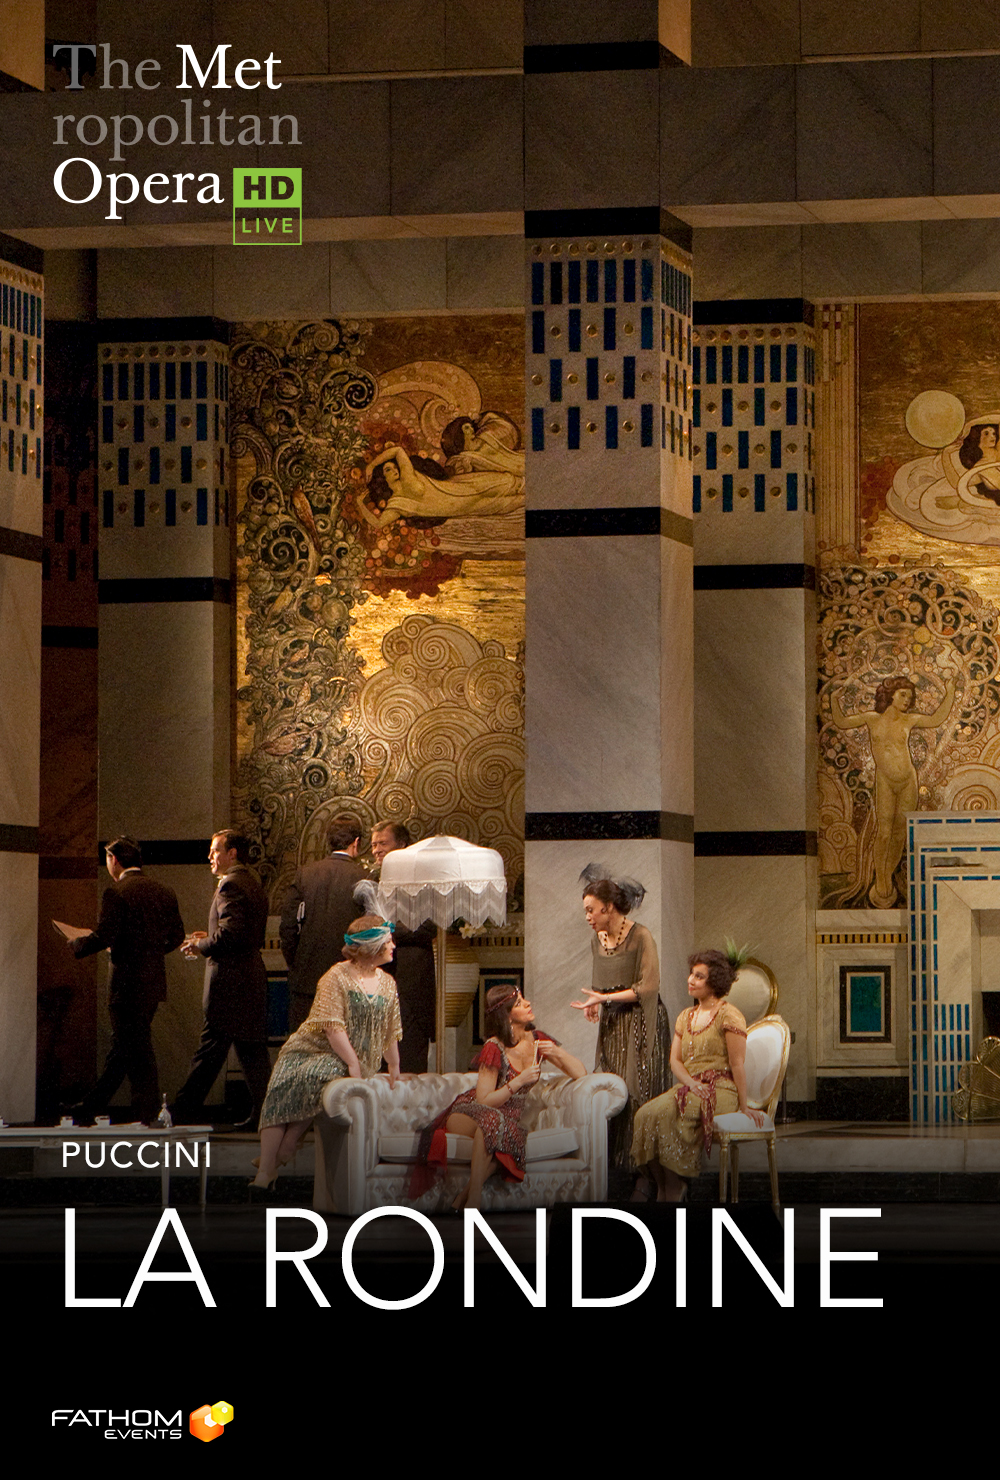 The Metropolitan Opera: La Rondine ENCORE